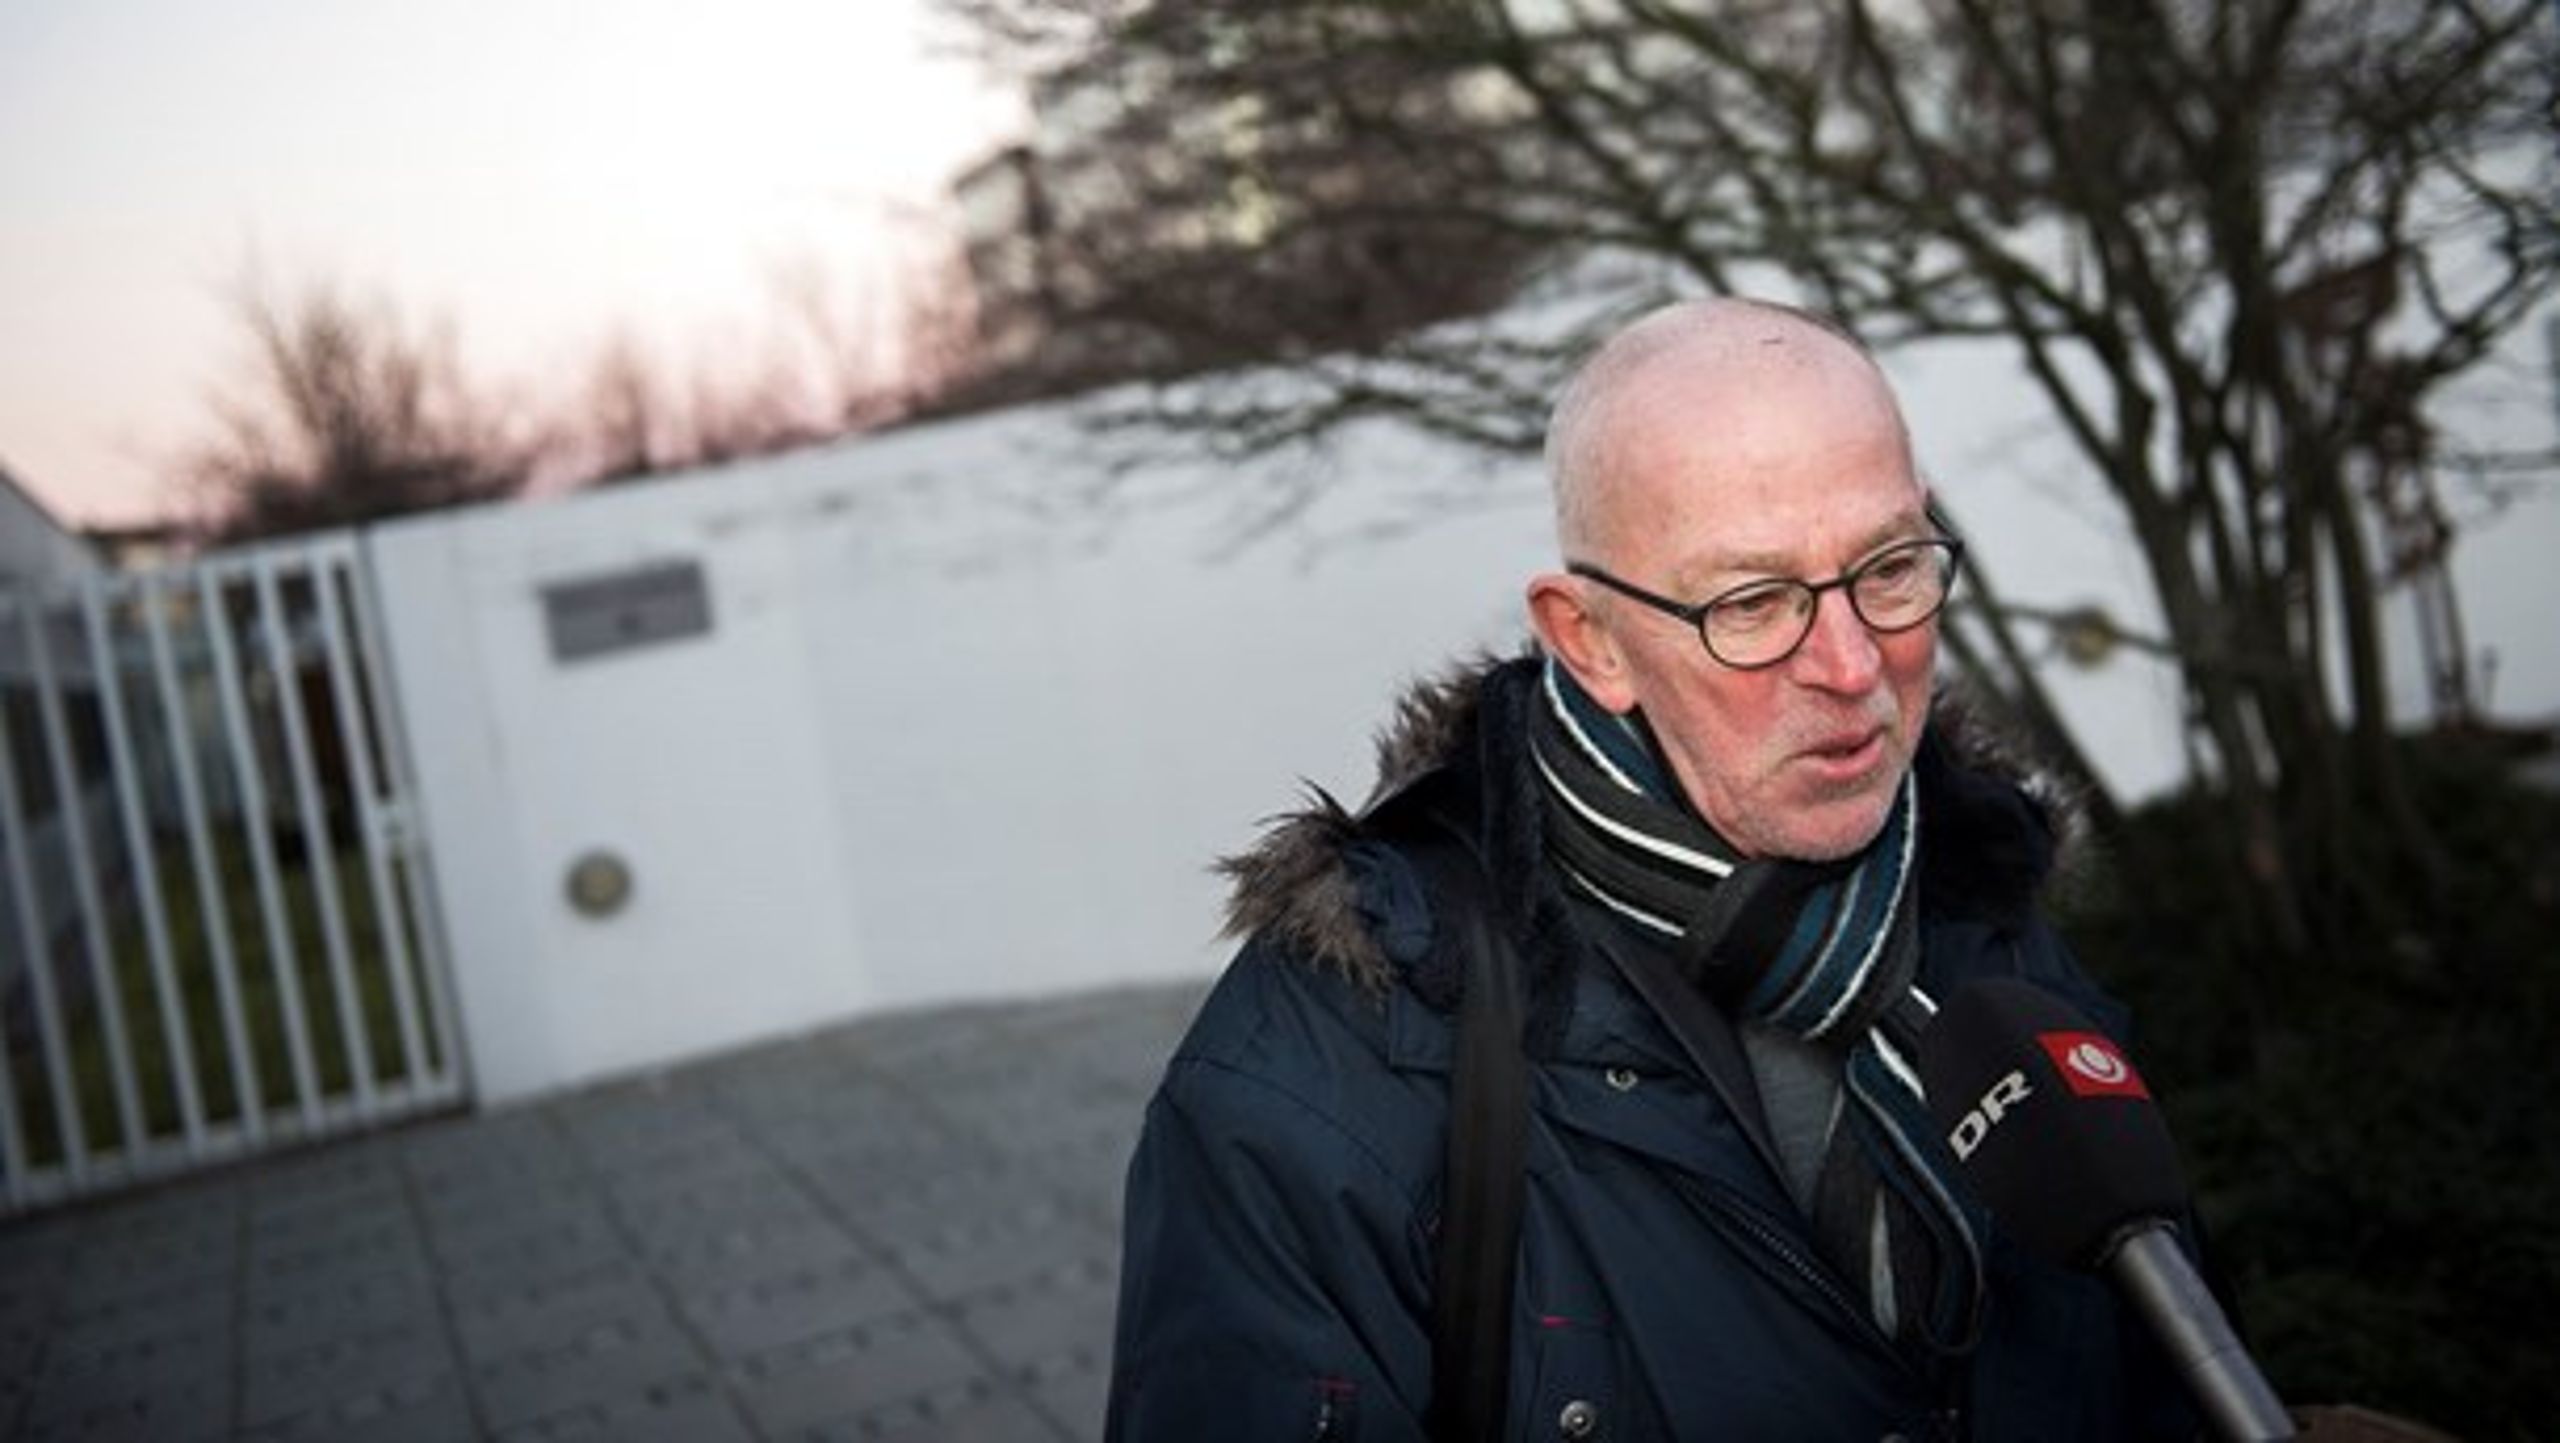 Villy Søvndal stoppede som udenrigsminister i 2013 efter at være blevet ramt af en blodprop. De seneste tre år har han siddet i regionsrådet i Region Syddanmark. Nu vil han være borgmester i Kolding.